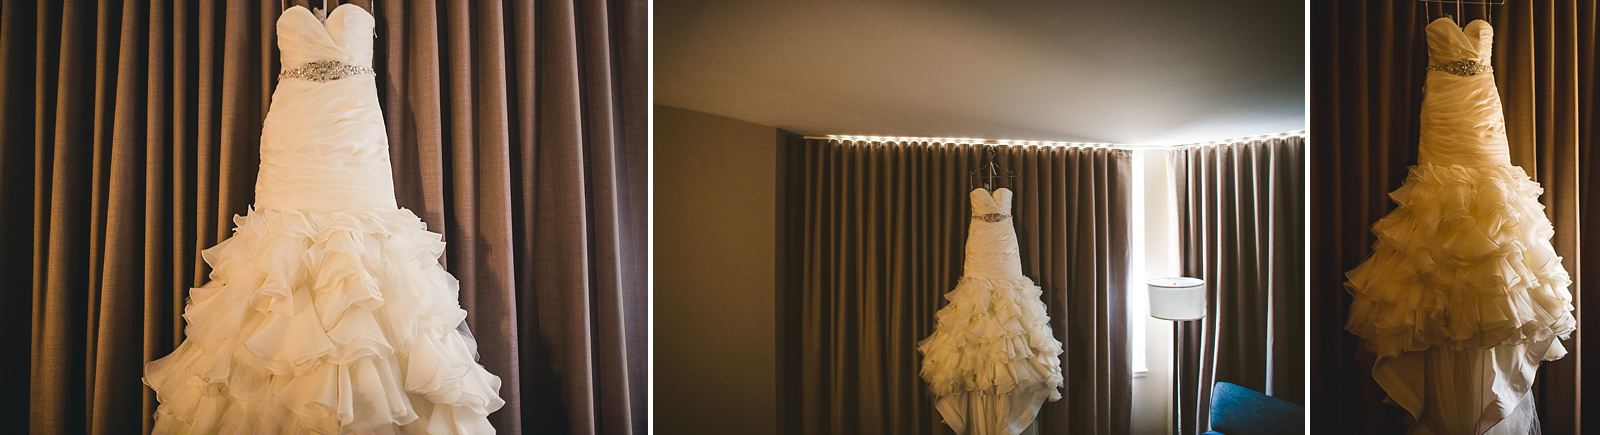 3 wedding dress at mid america club - Mid America Club Wedding Photography / Hannah + Jay